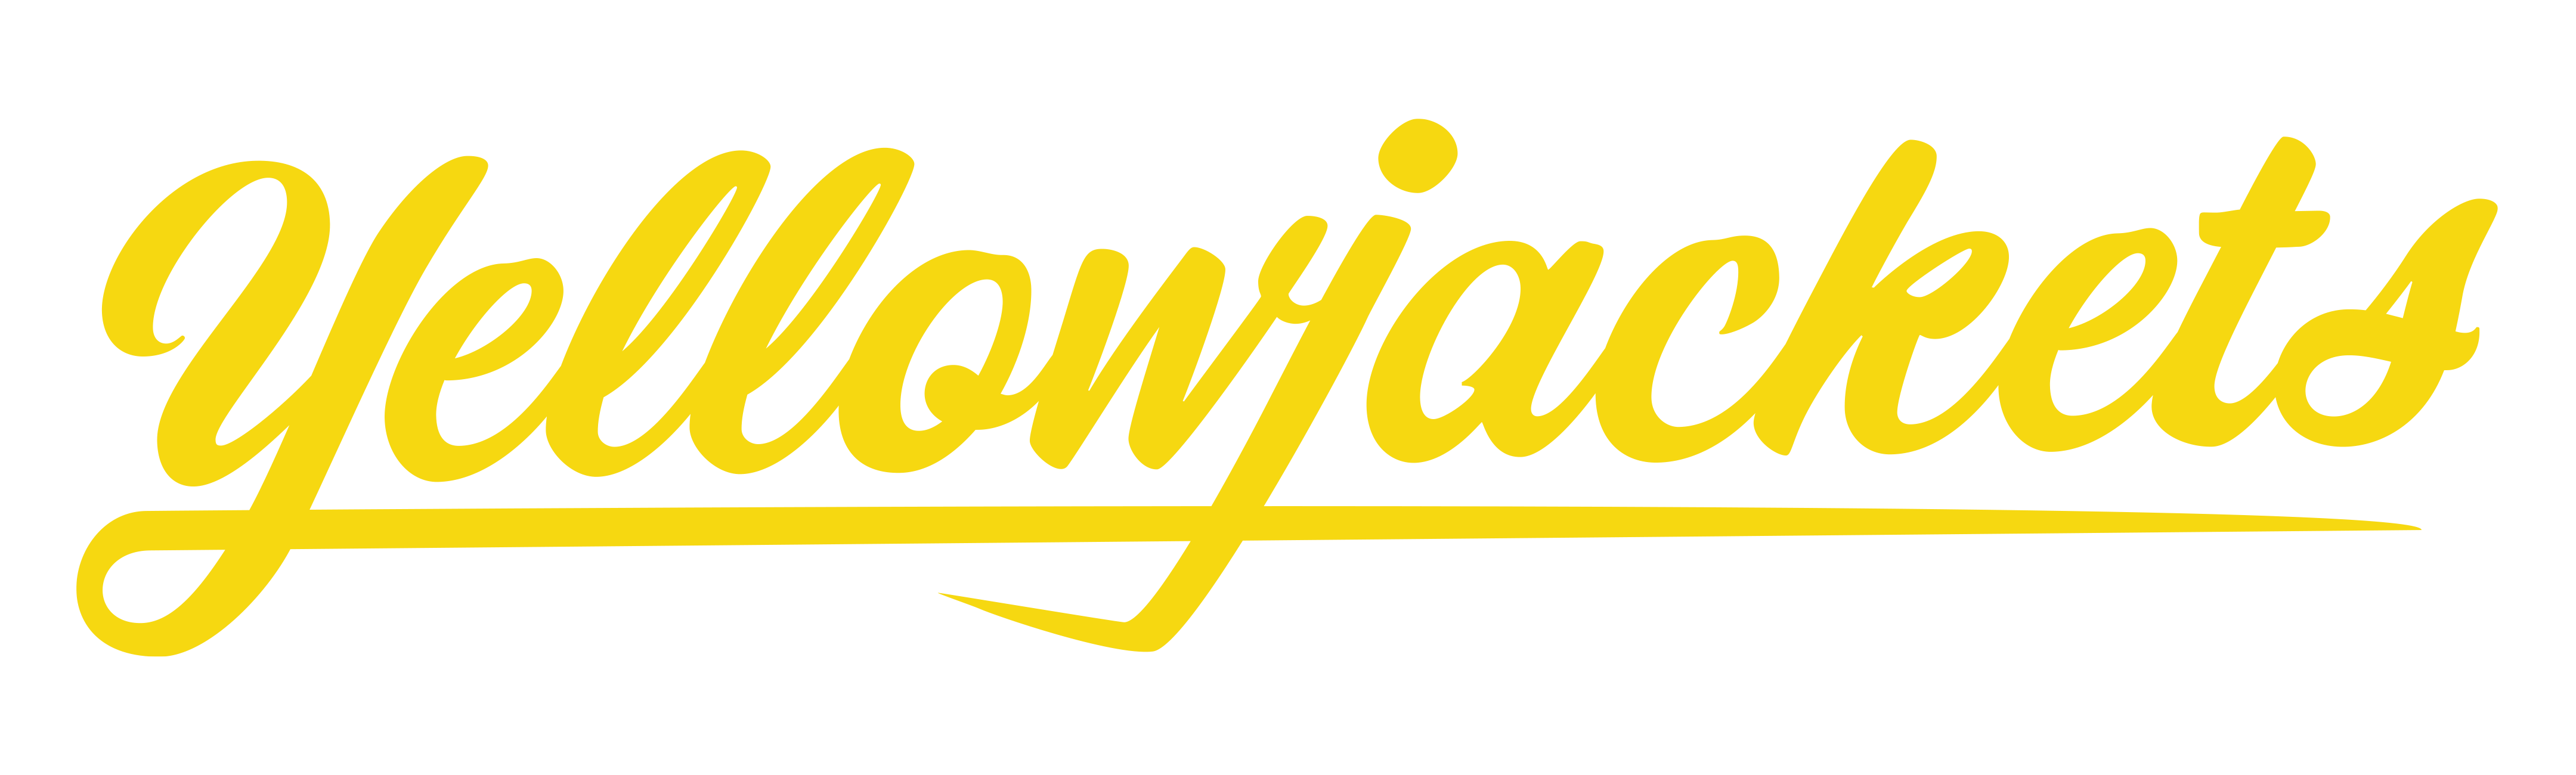 Yellowjackets icon